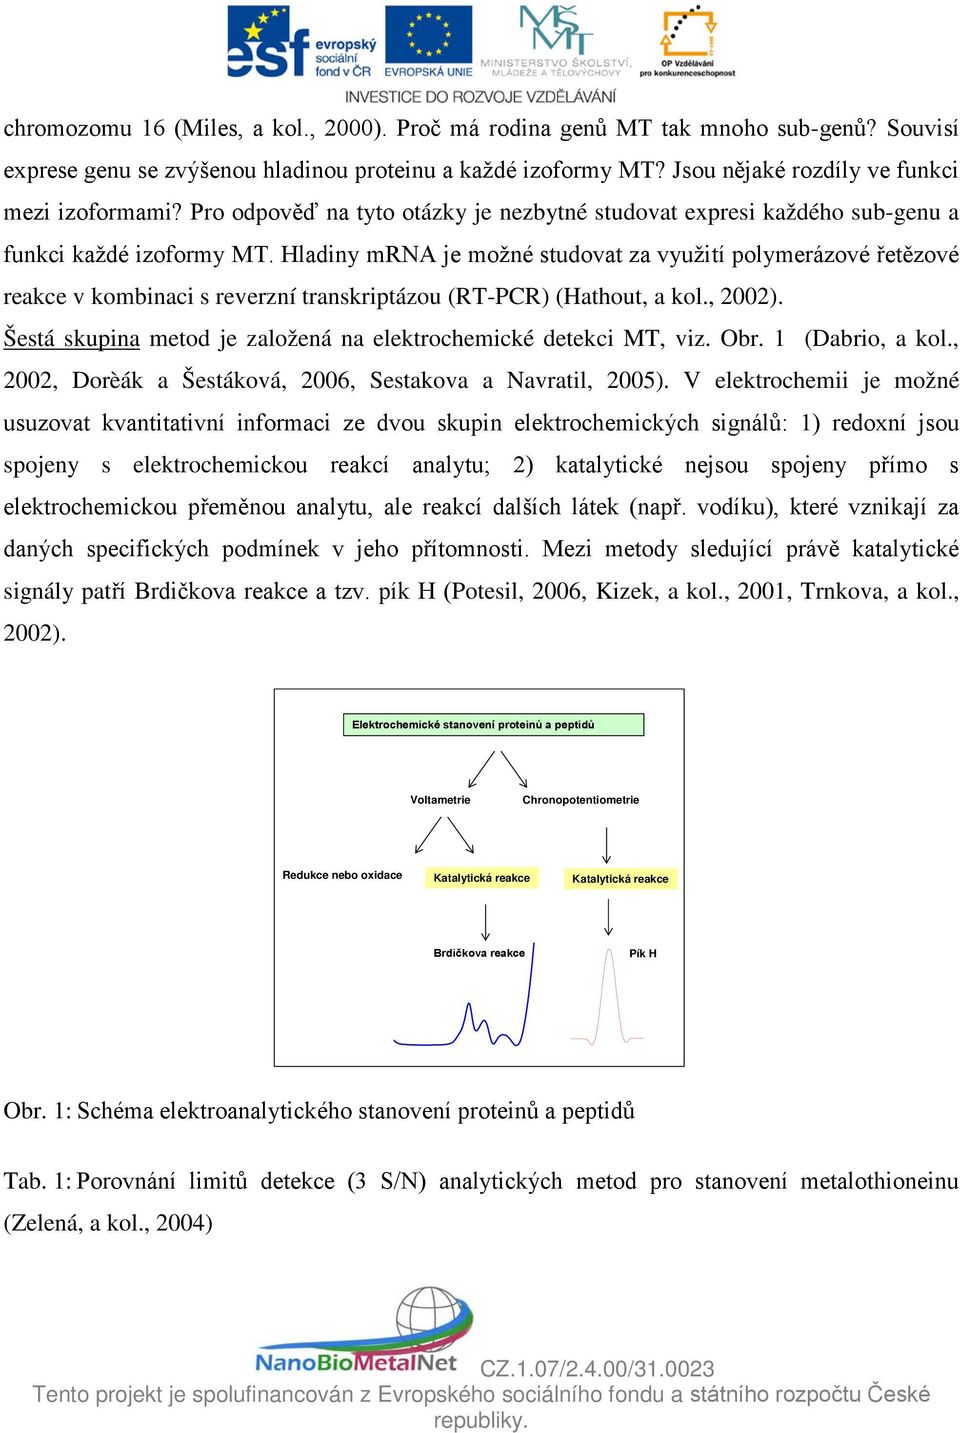 Hladiny mrna je možné studovat za využití polymerázové řetězové reakce v kombinaci s reverzní transkriptázou (RT-PCR) (Hathout, a kol., 2002).